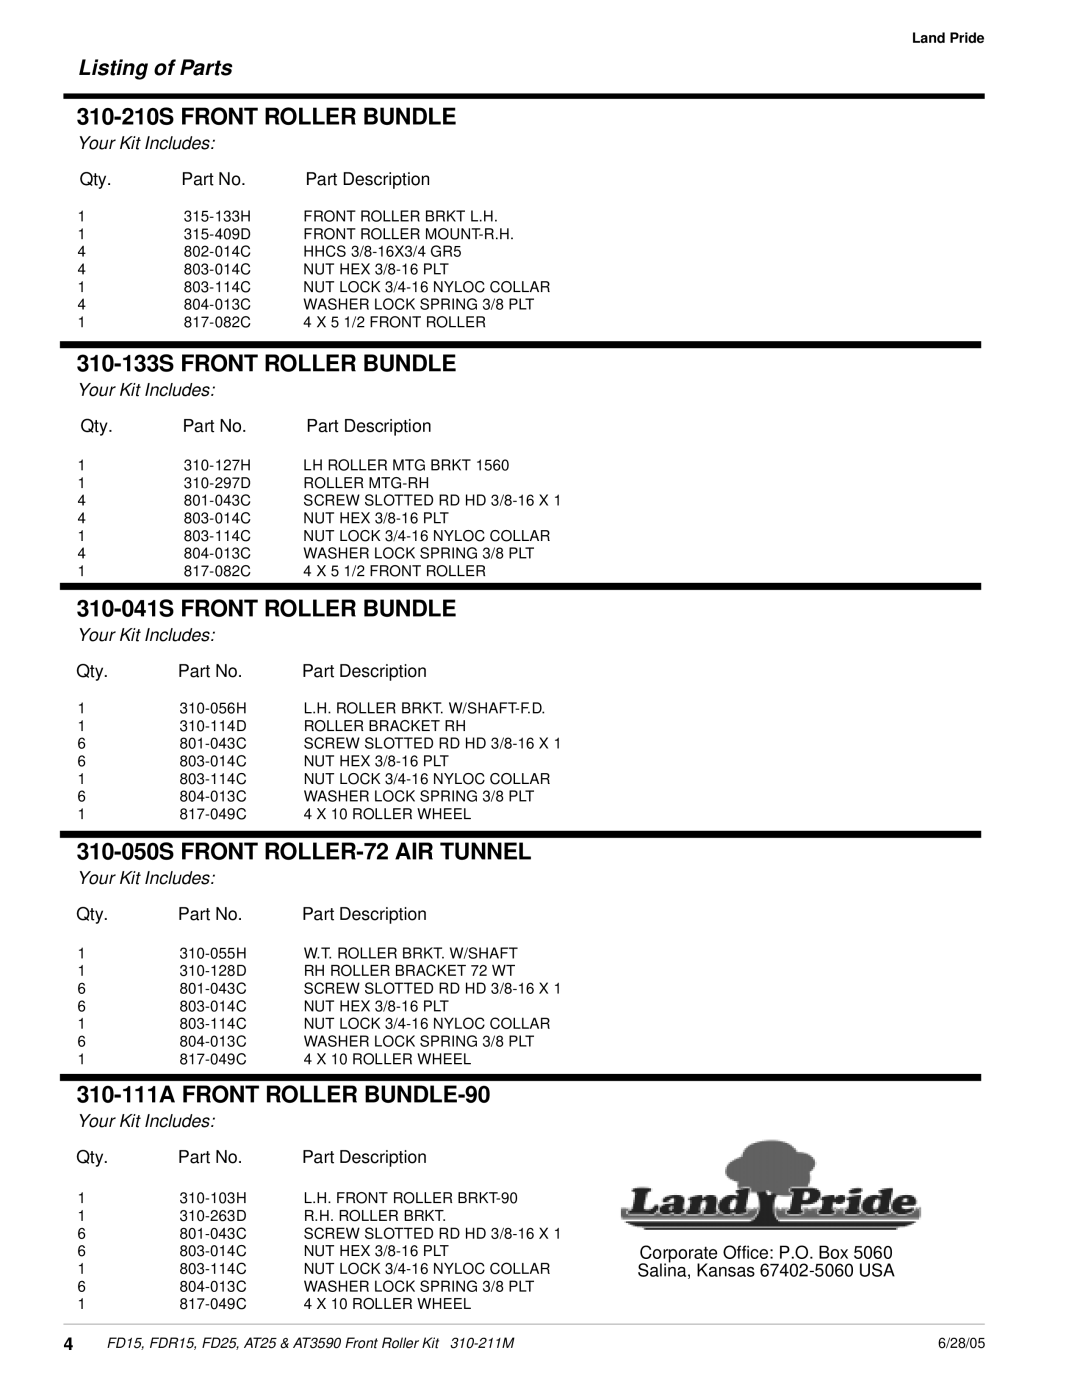 Land Pride FD25 Listing of Parts, 310-210SFRONT ROLLER BUNDLE, 310-133SFRONT ROLLER BUNDLE, 310-041SFRONT ROLLER BUNDLE 